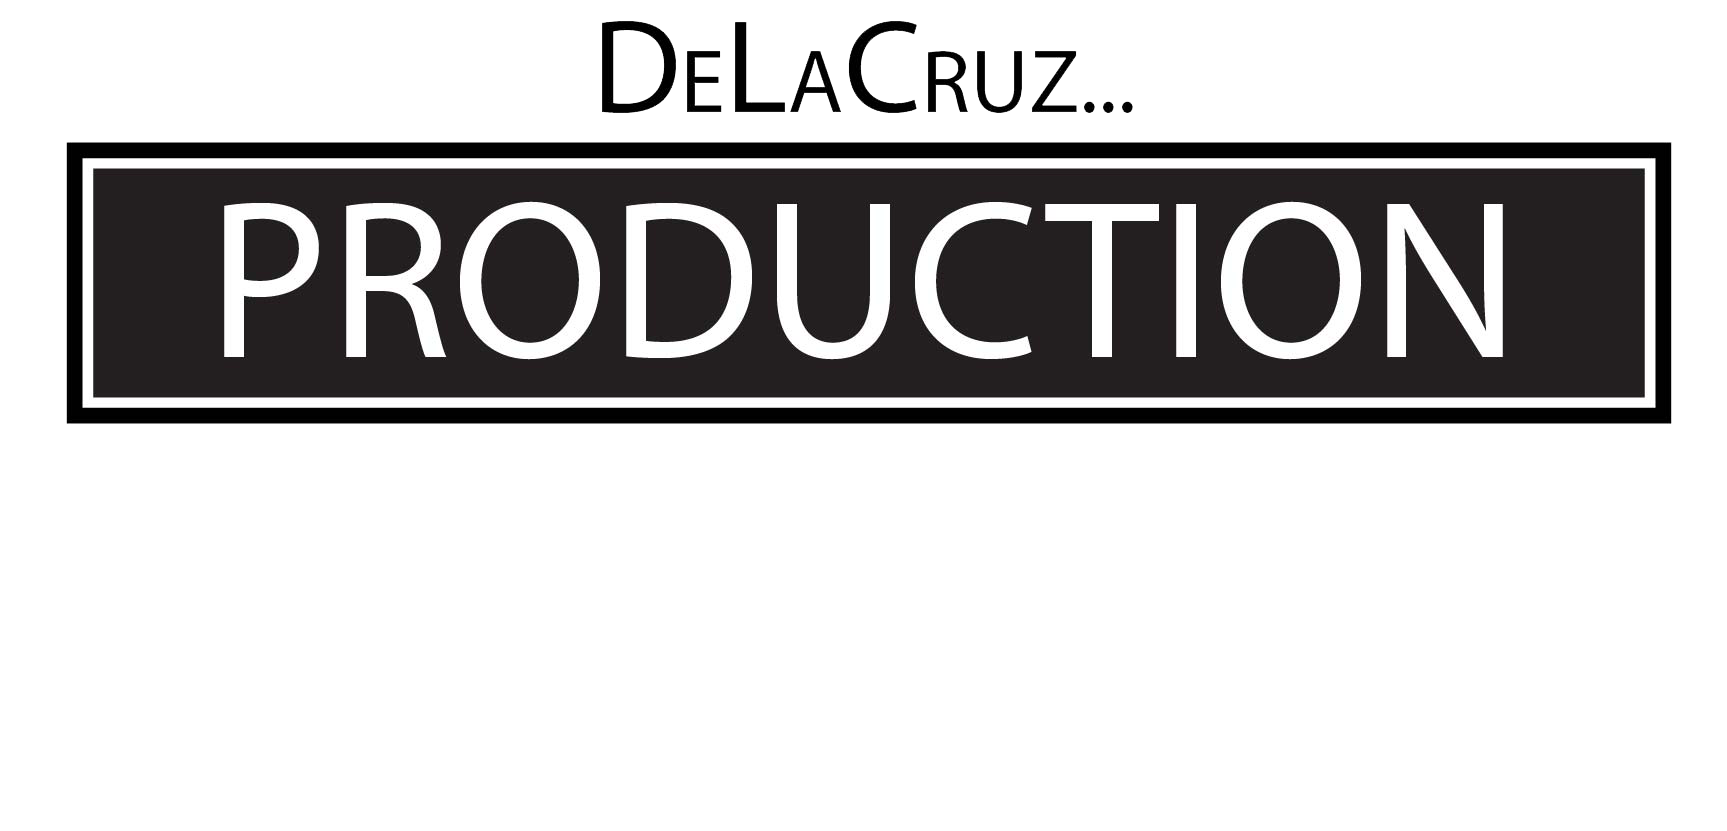 Delacruz production